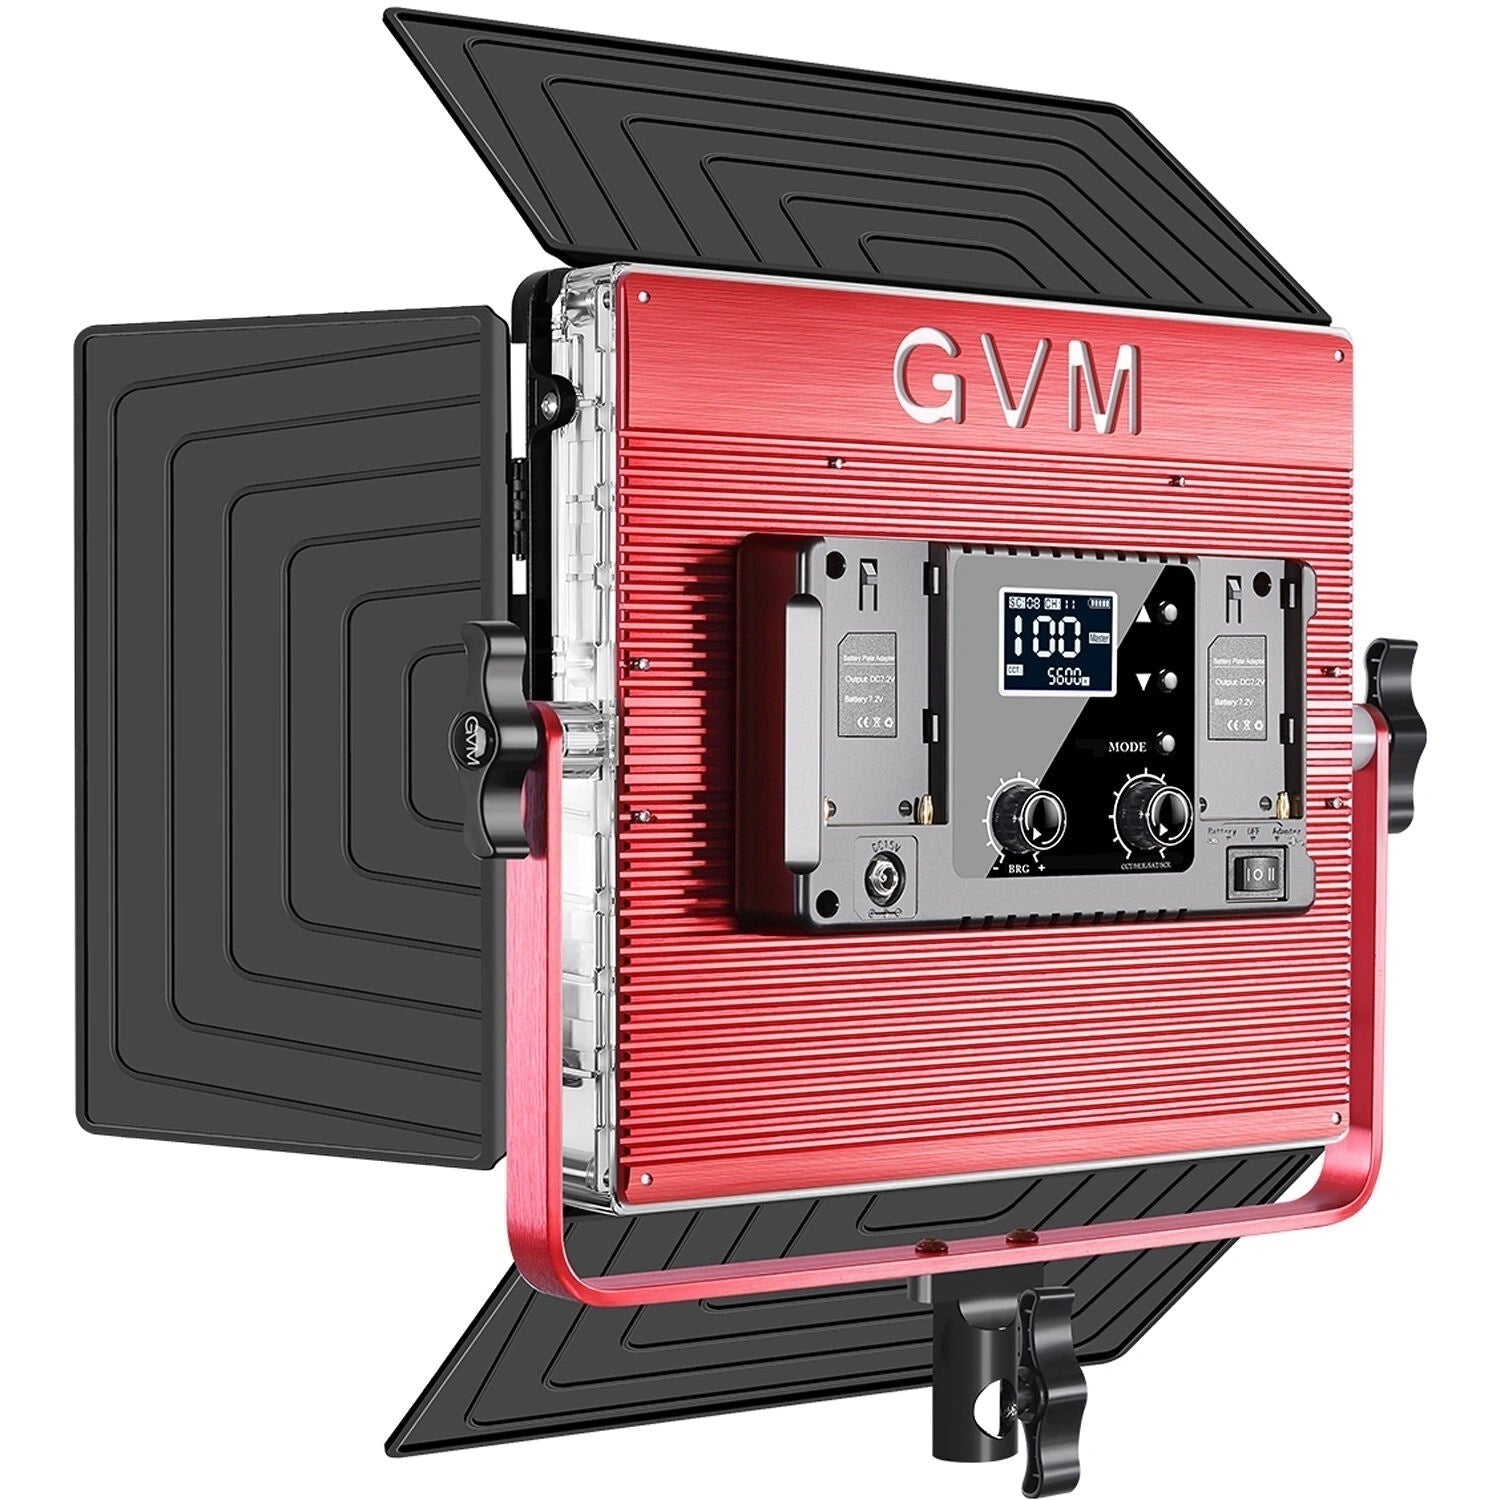 GVM 1200D-RGB LED Studio Video Light Kit - mylensball.com.au